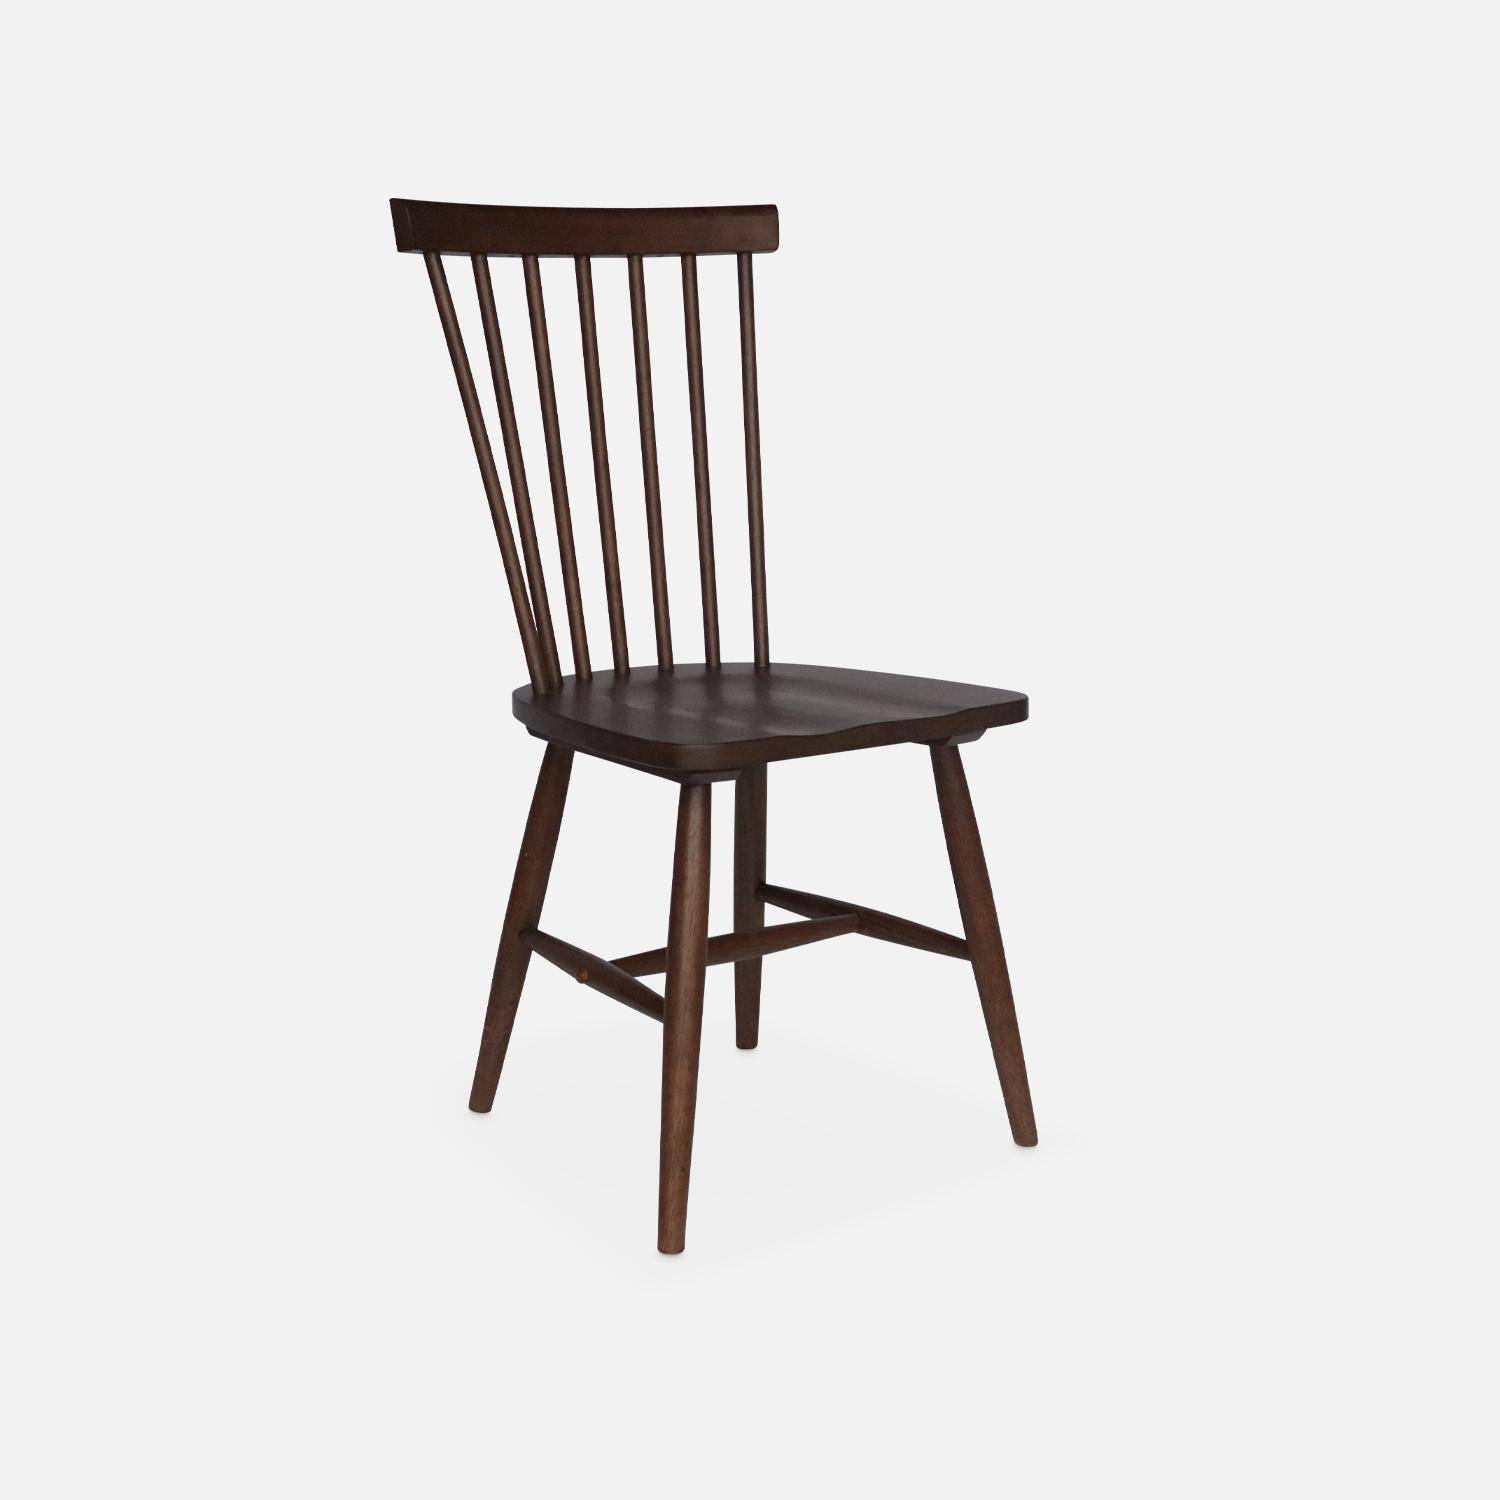 Juego de 2 sillas de nogal con listones de madera de caucho, ROMIE, ancho 50,8 x fondo 44,2 x alto 90cm. Photo6